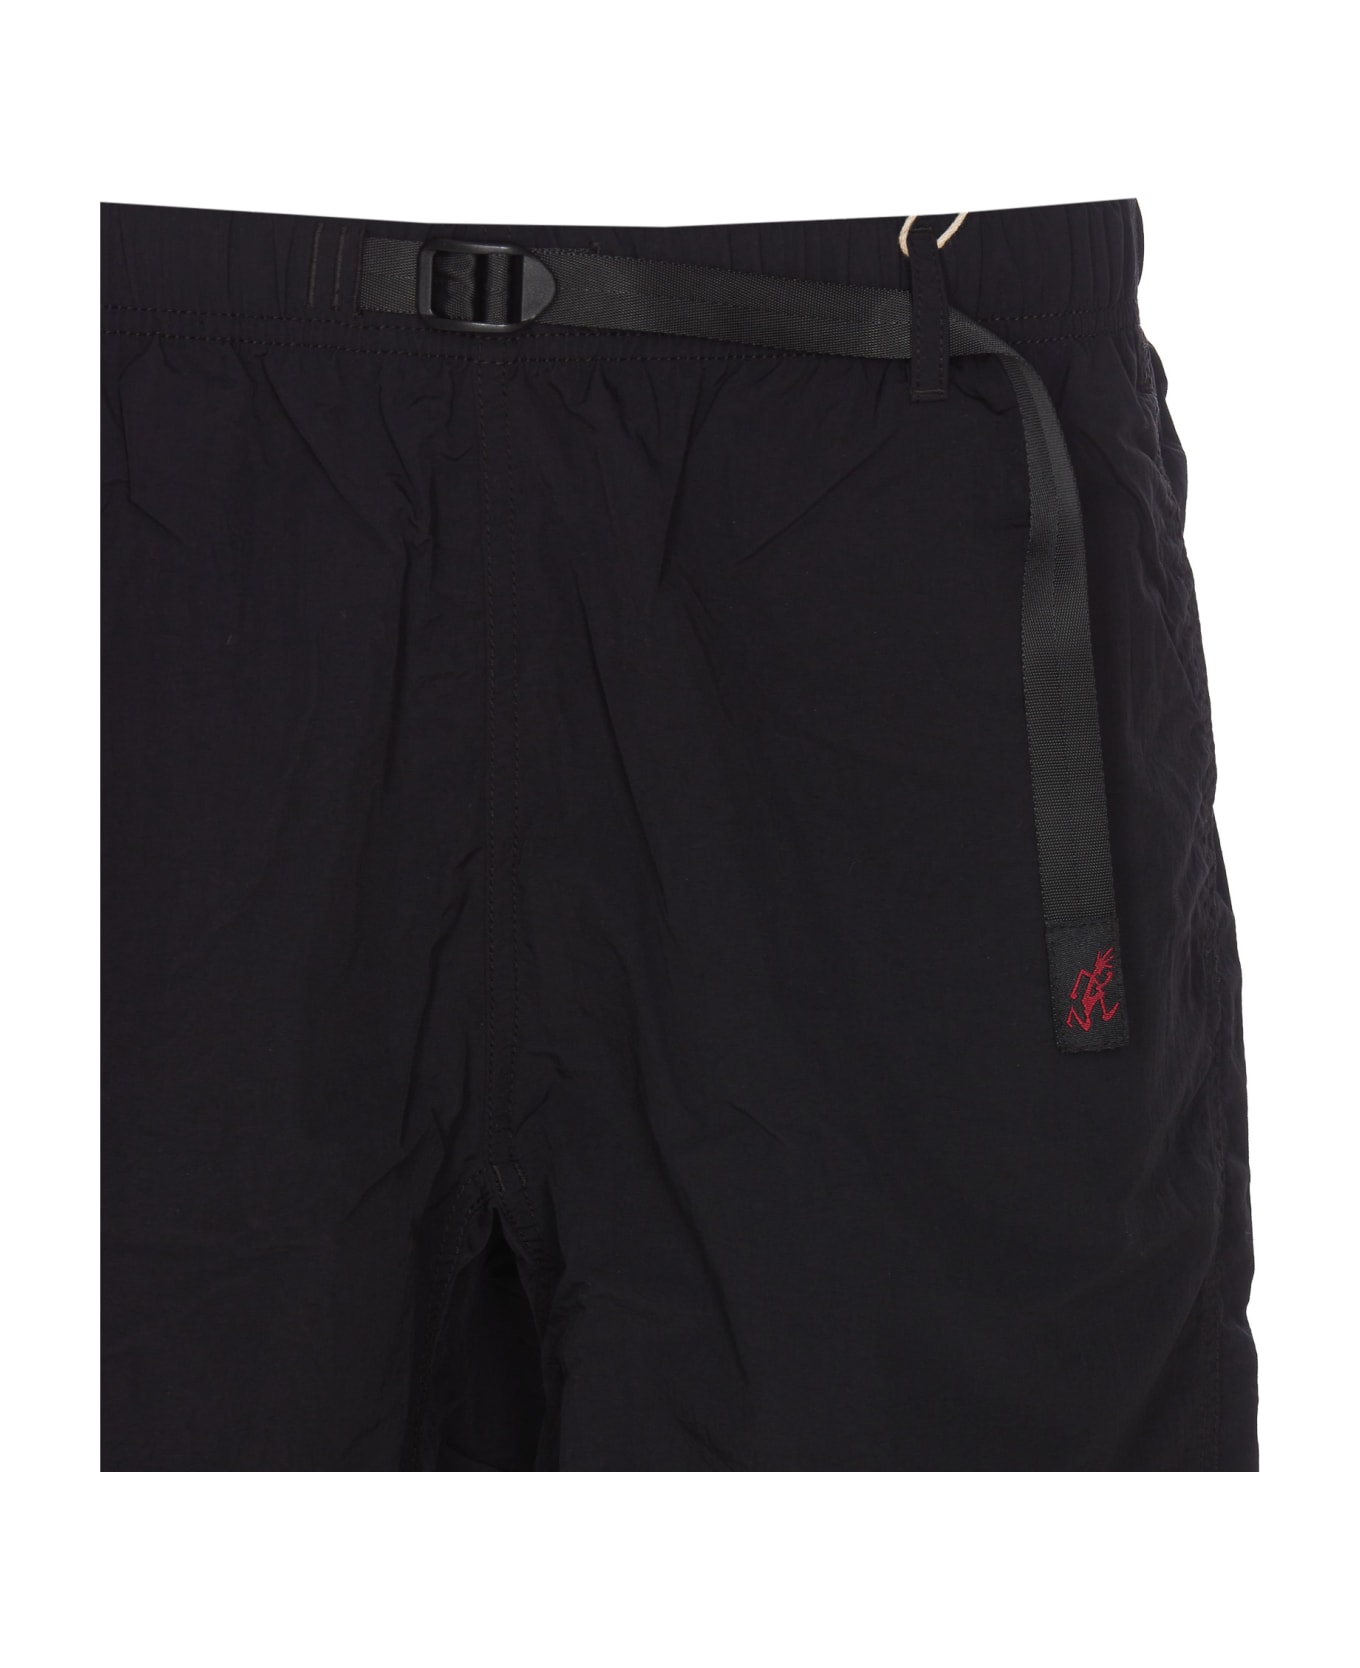 Gramicci Nylon Packable G-shorts - Black ショートパンツ